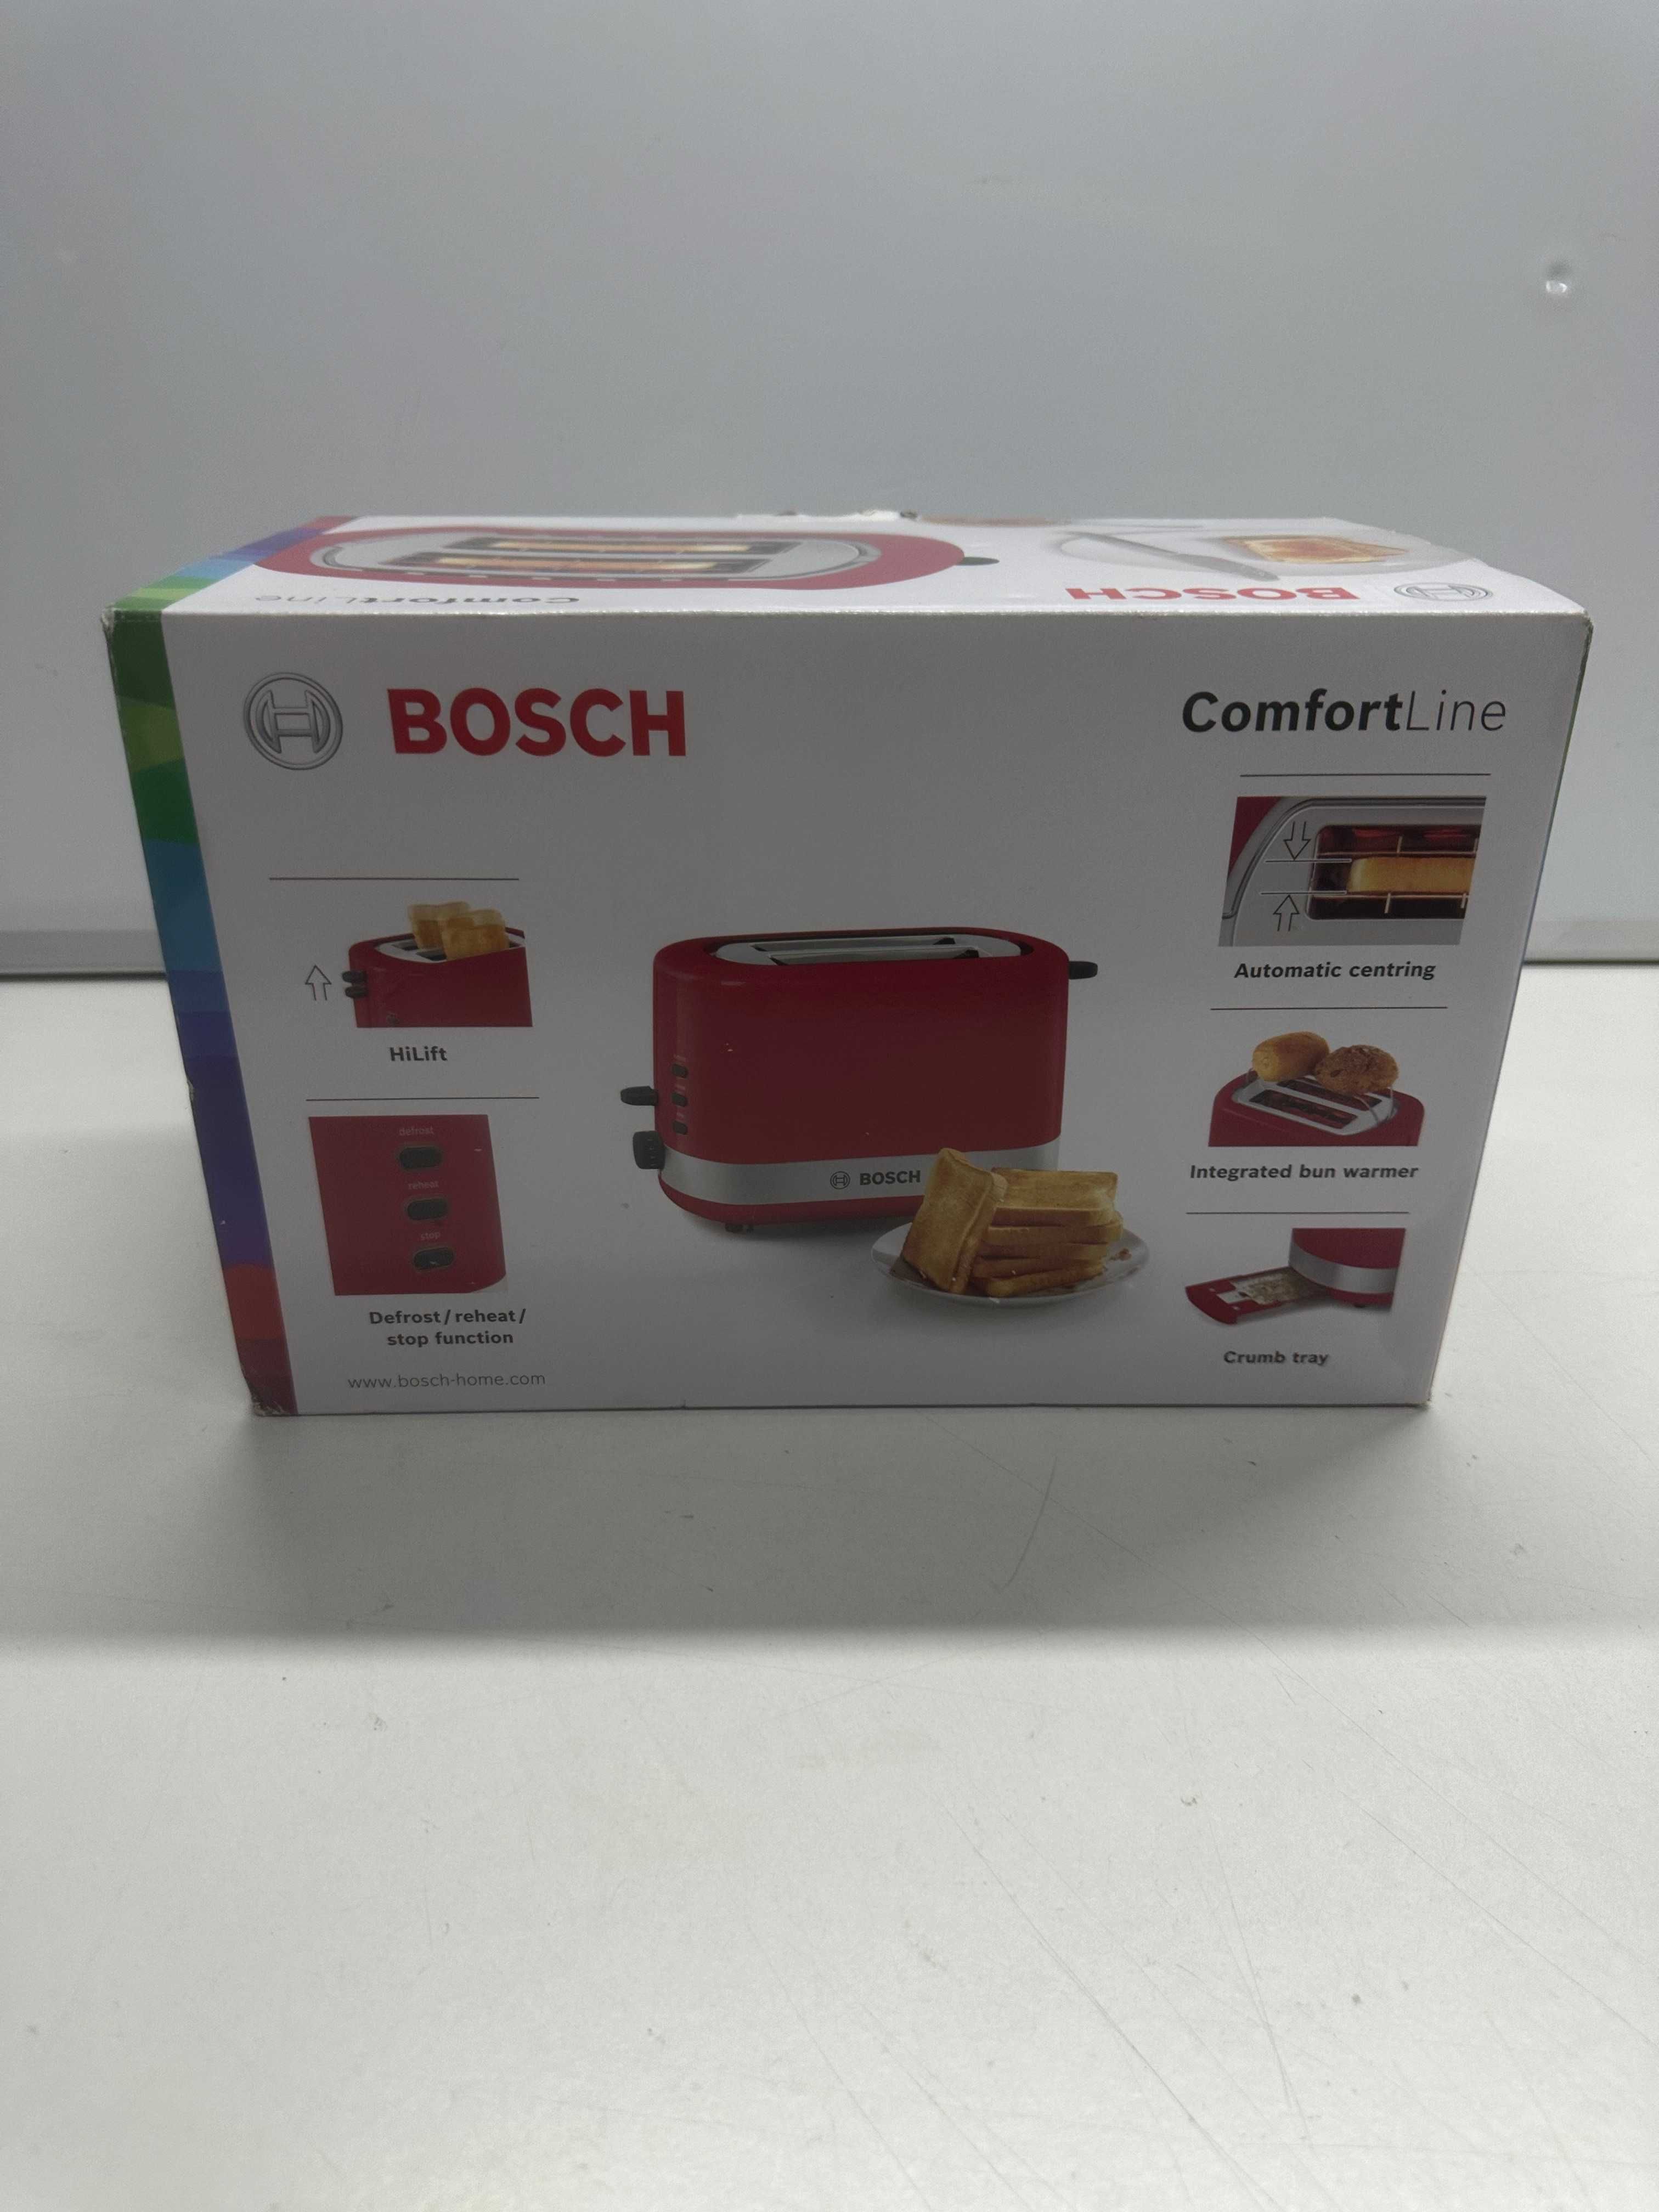 USZKODZONY Toster Bosch 6A514 czerwony 800 W P18A6